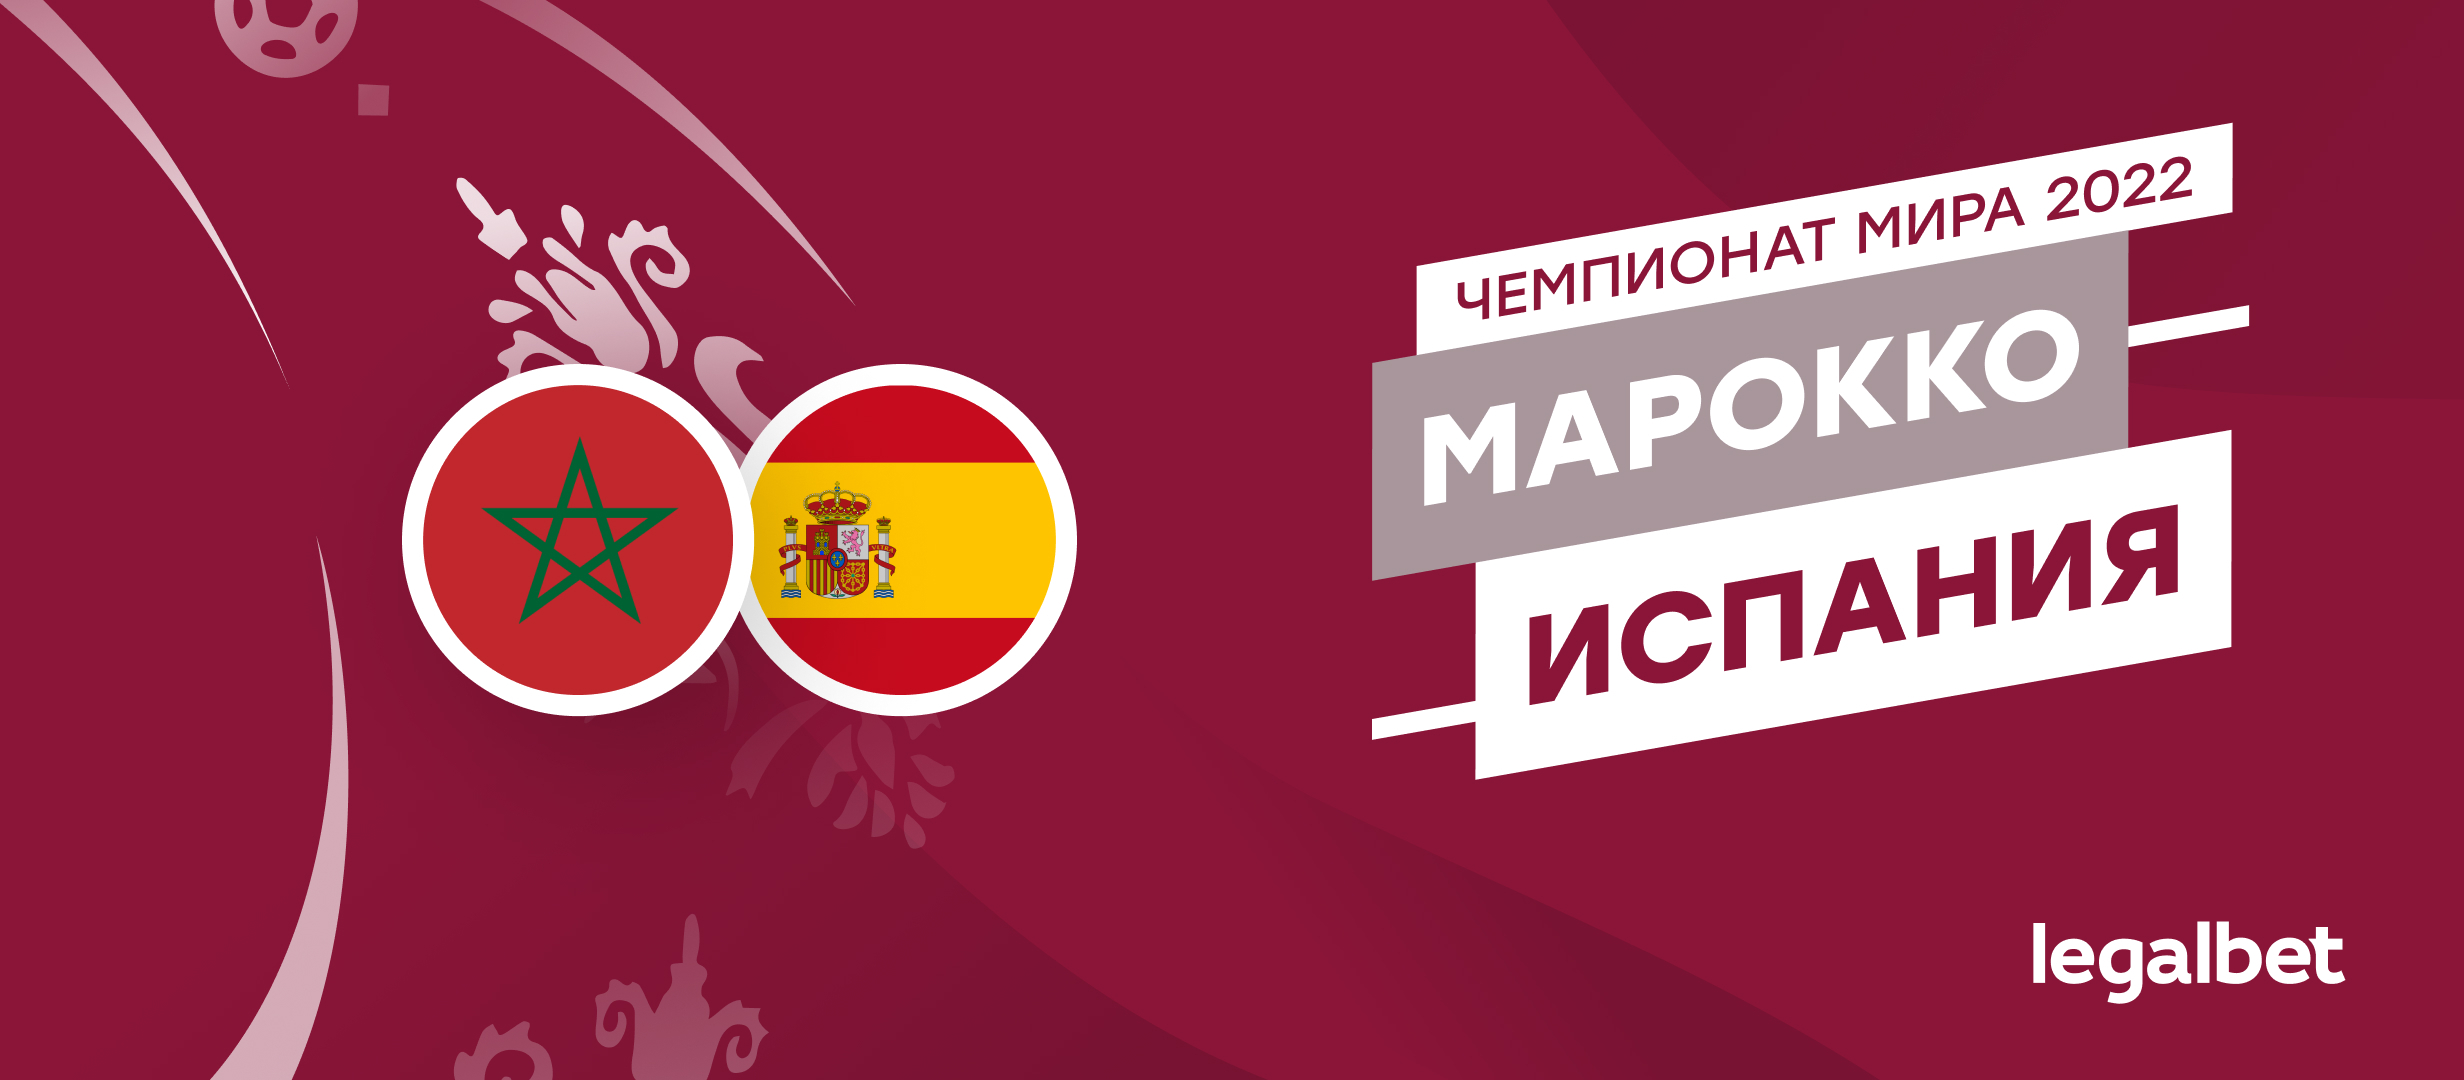 Марокко — Испания: прогноз, ставки, коэффициенты на матч ЧМ-2022